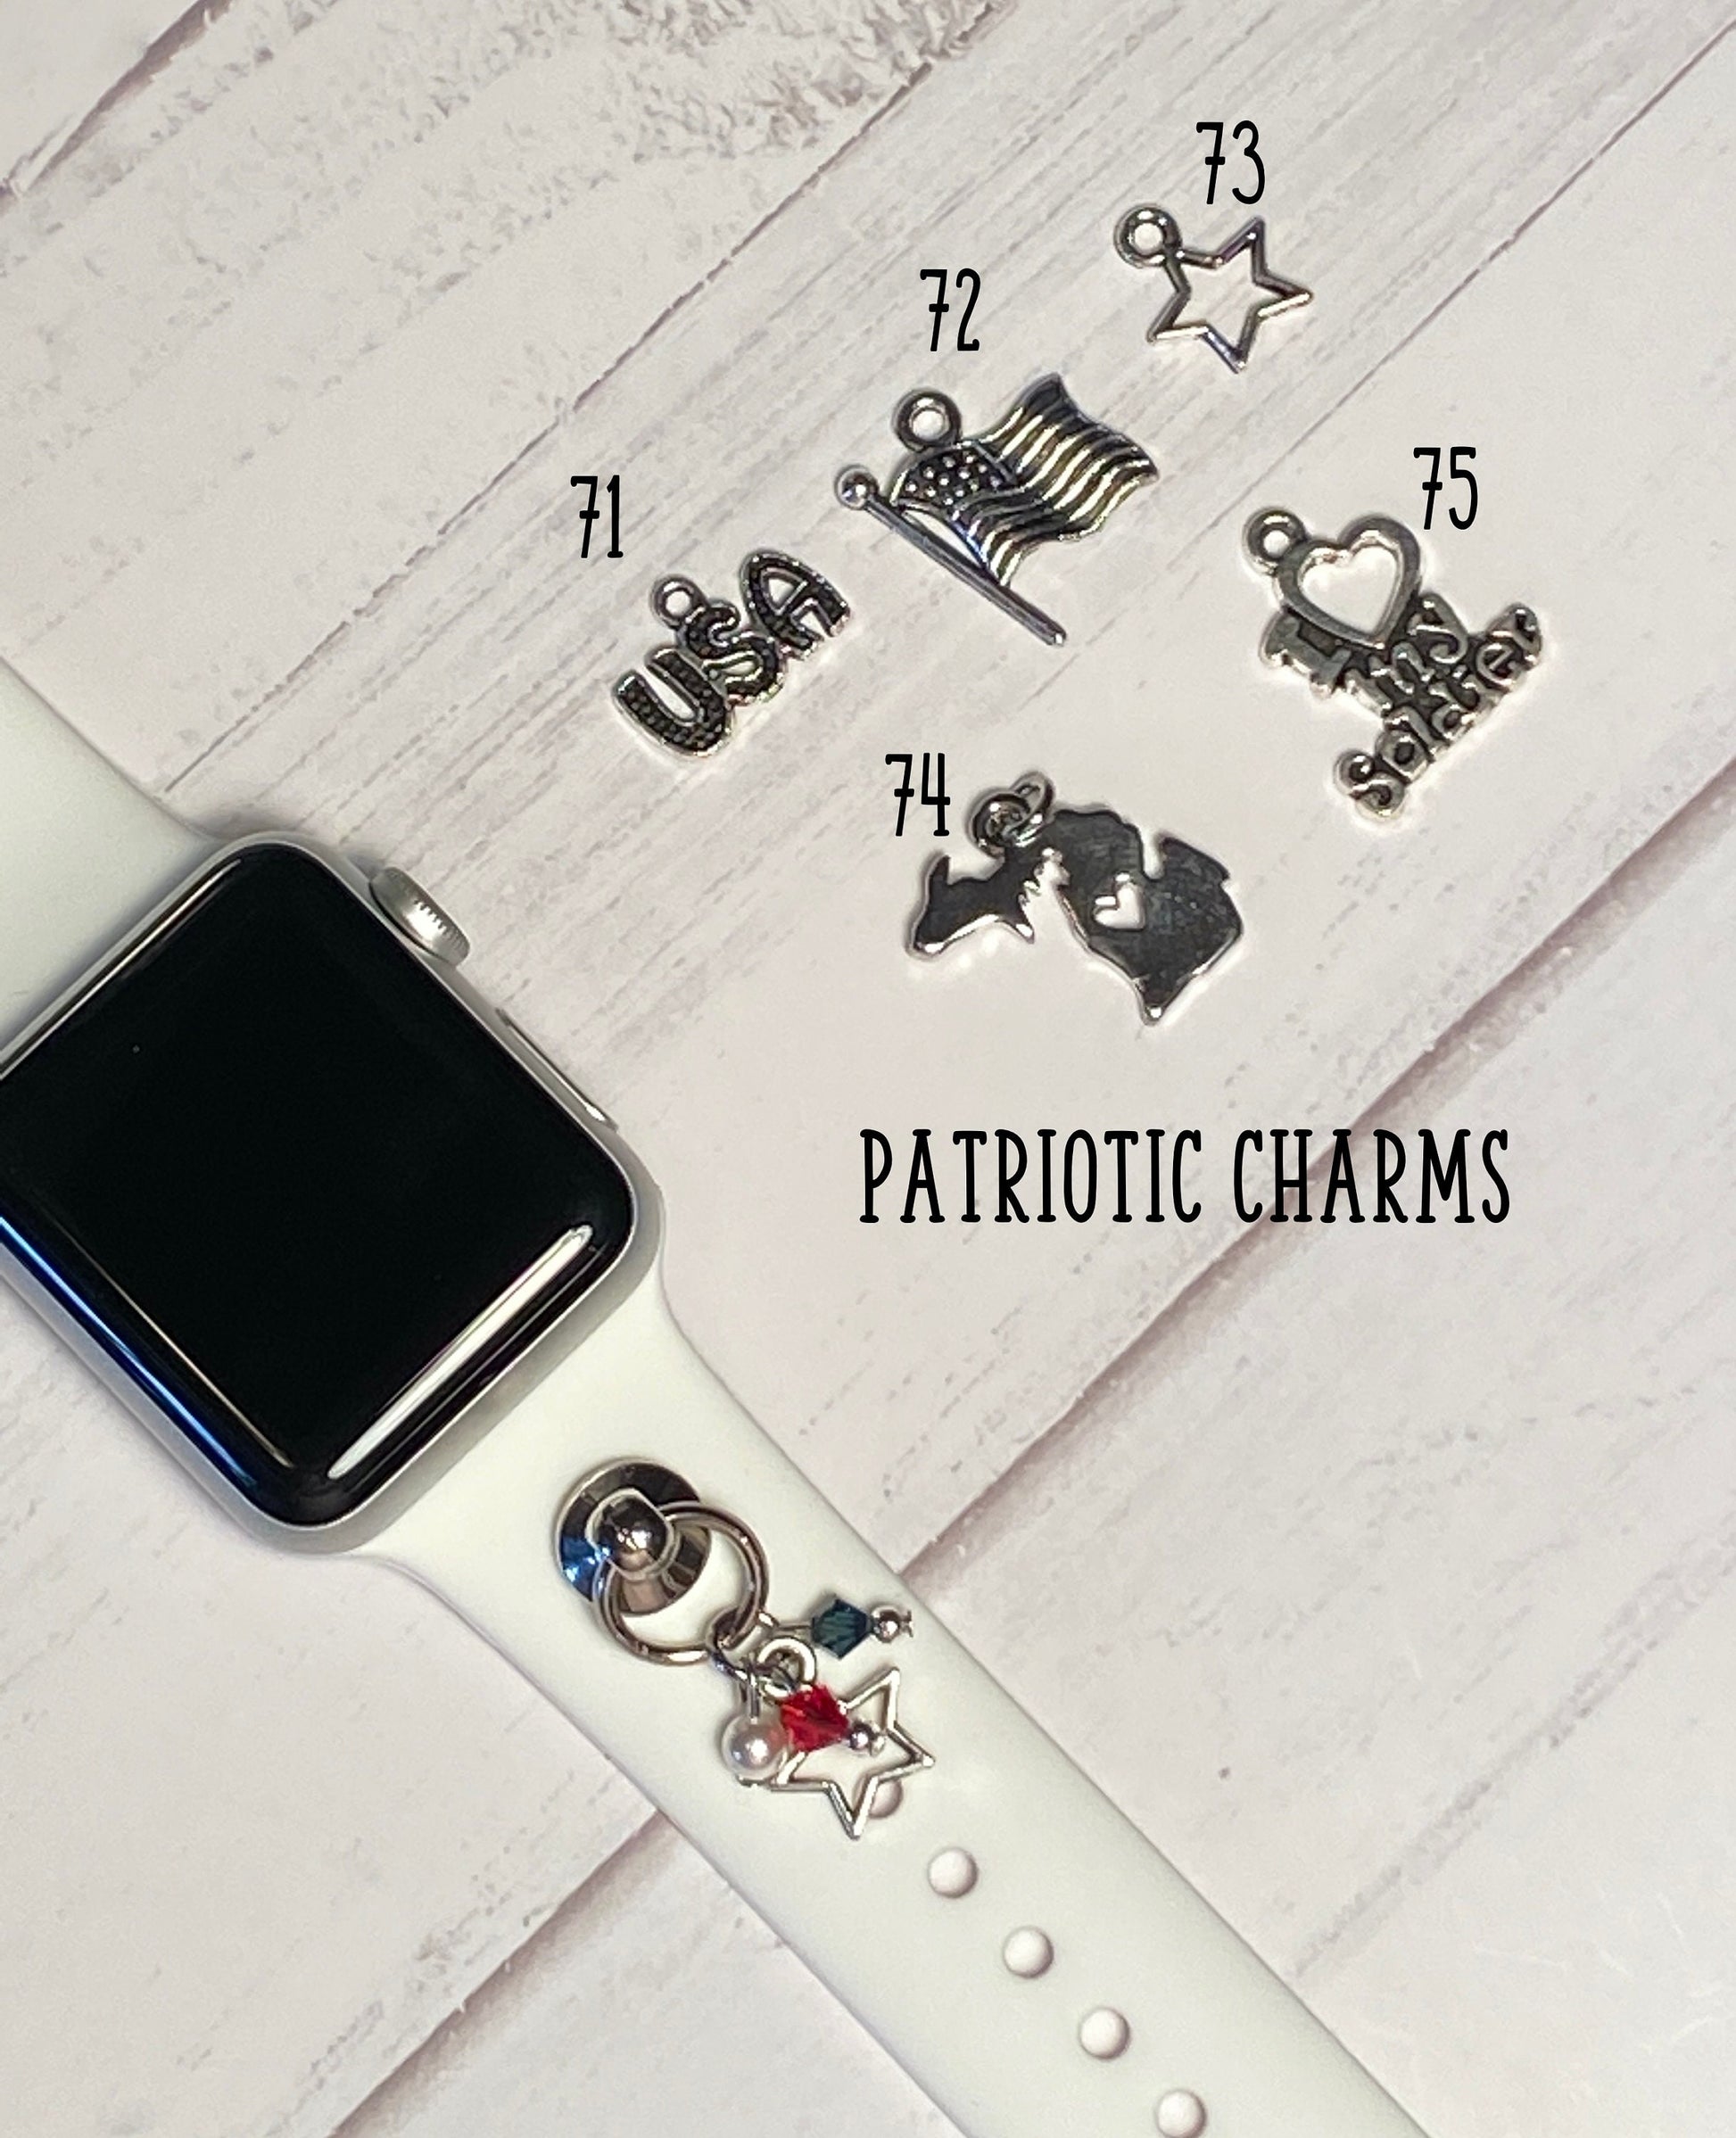 USA Watchband Charms, Watch Charm, Personalized Jewelry, Patriotic Charm, Custom Charm, Phone Case Charm, SmartWatch Charm, Apple Charm